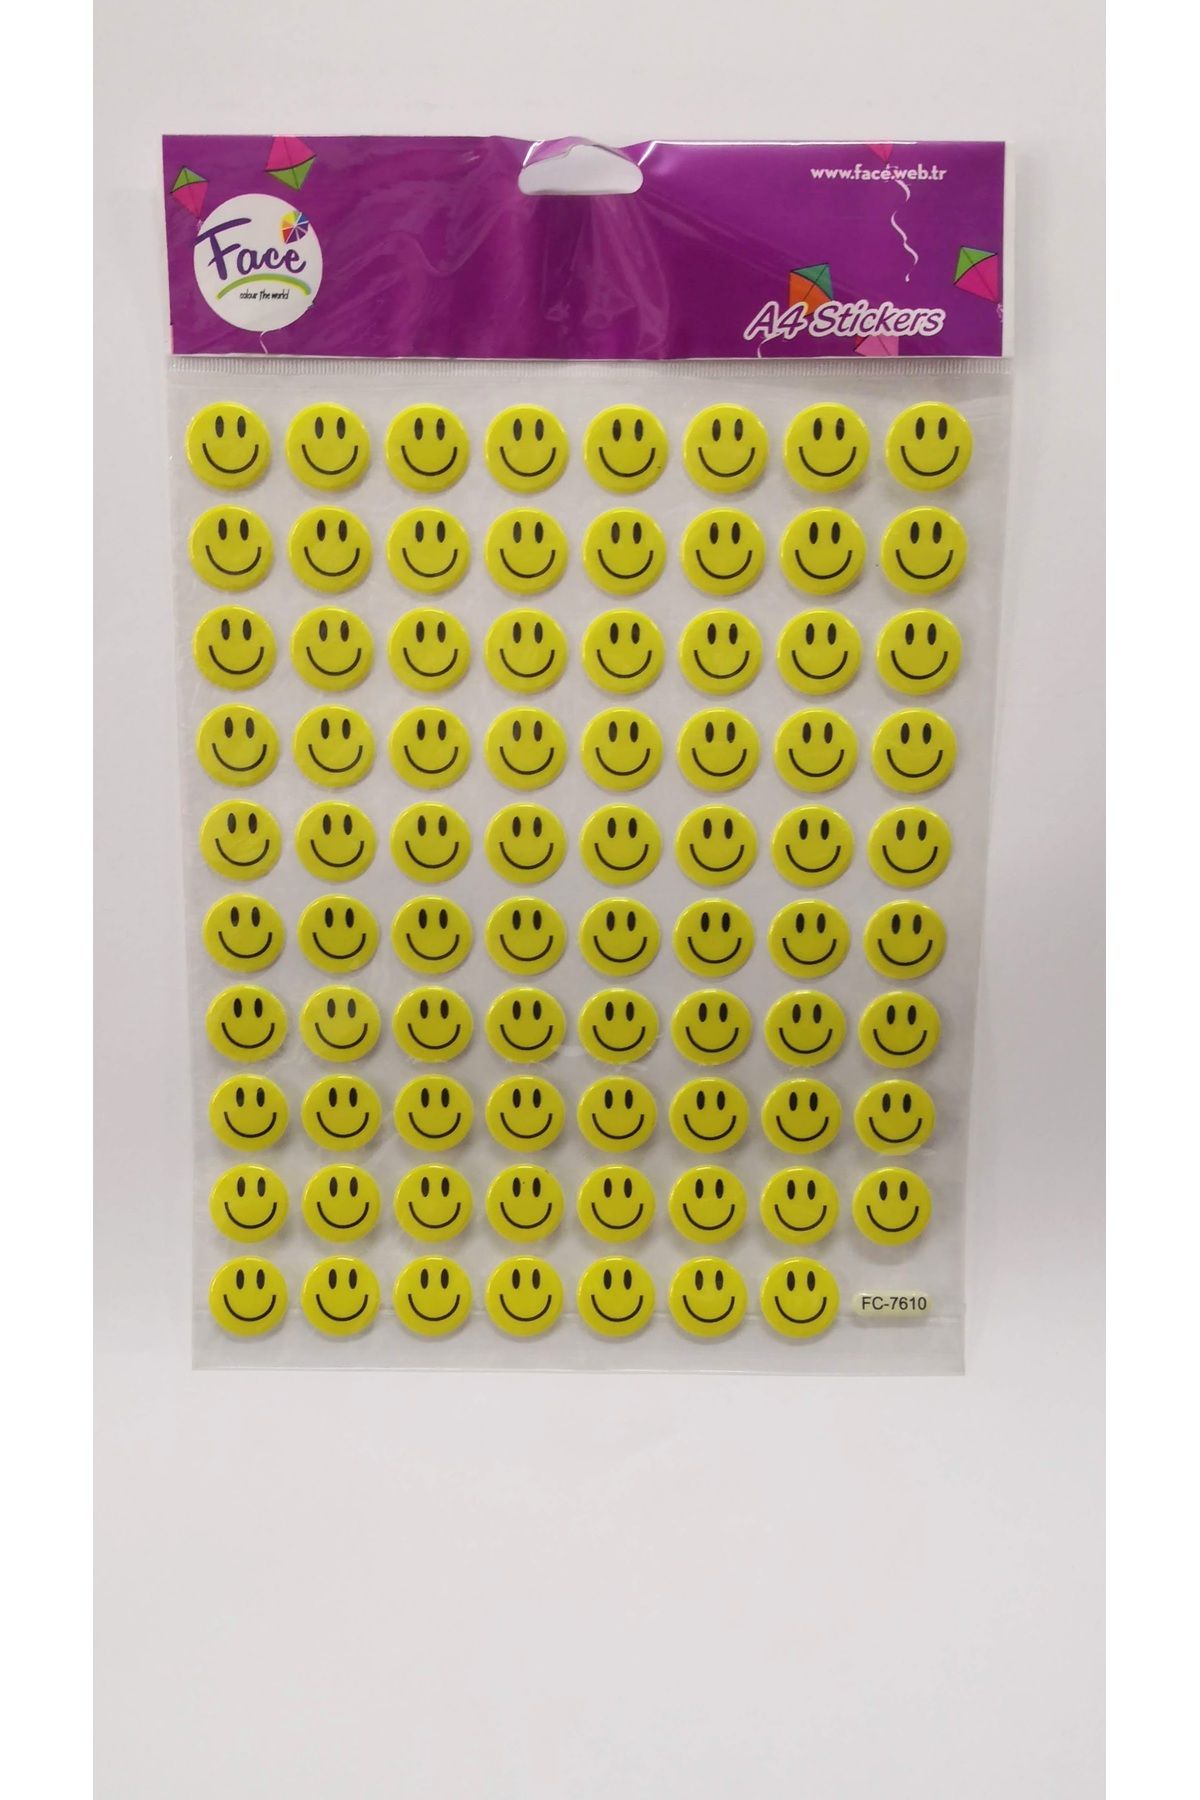 Face Sarı Gülenyüz Kabartmalı Resimli Stickers Etiket